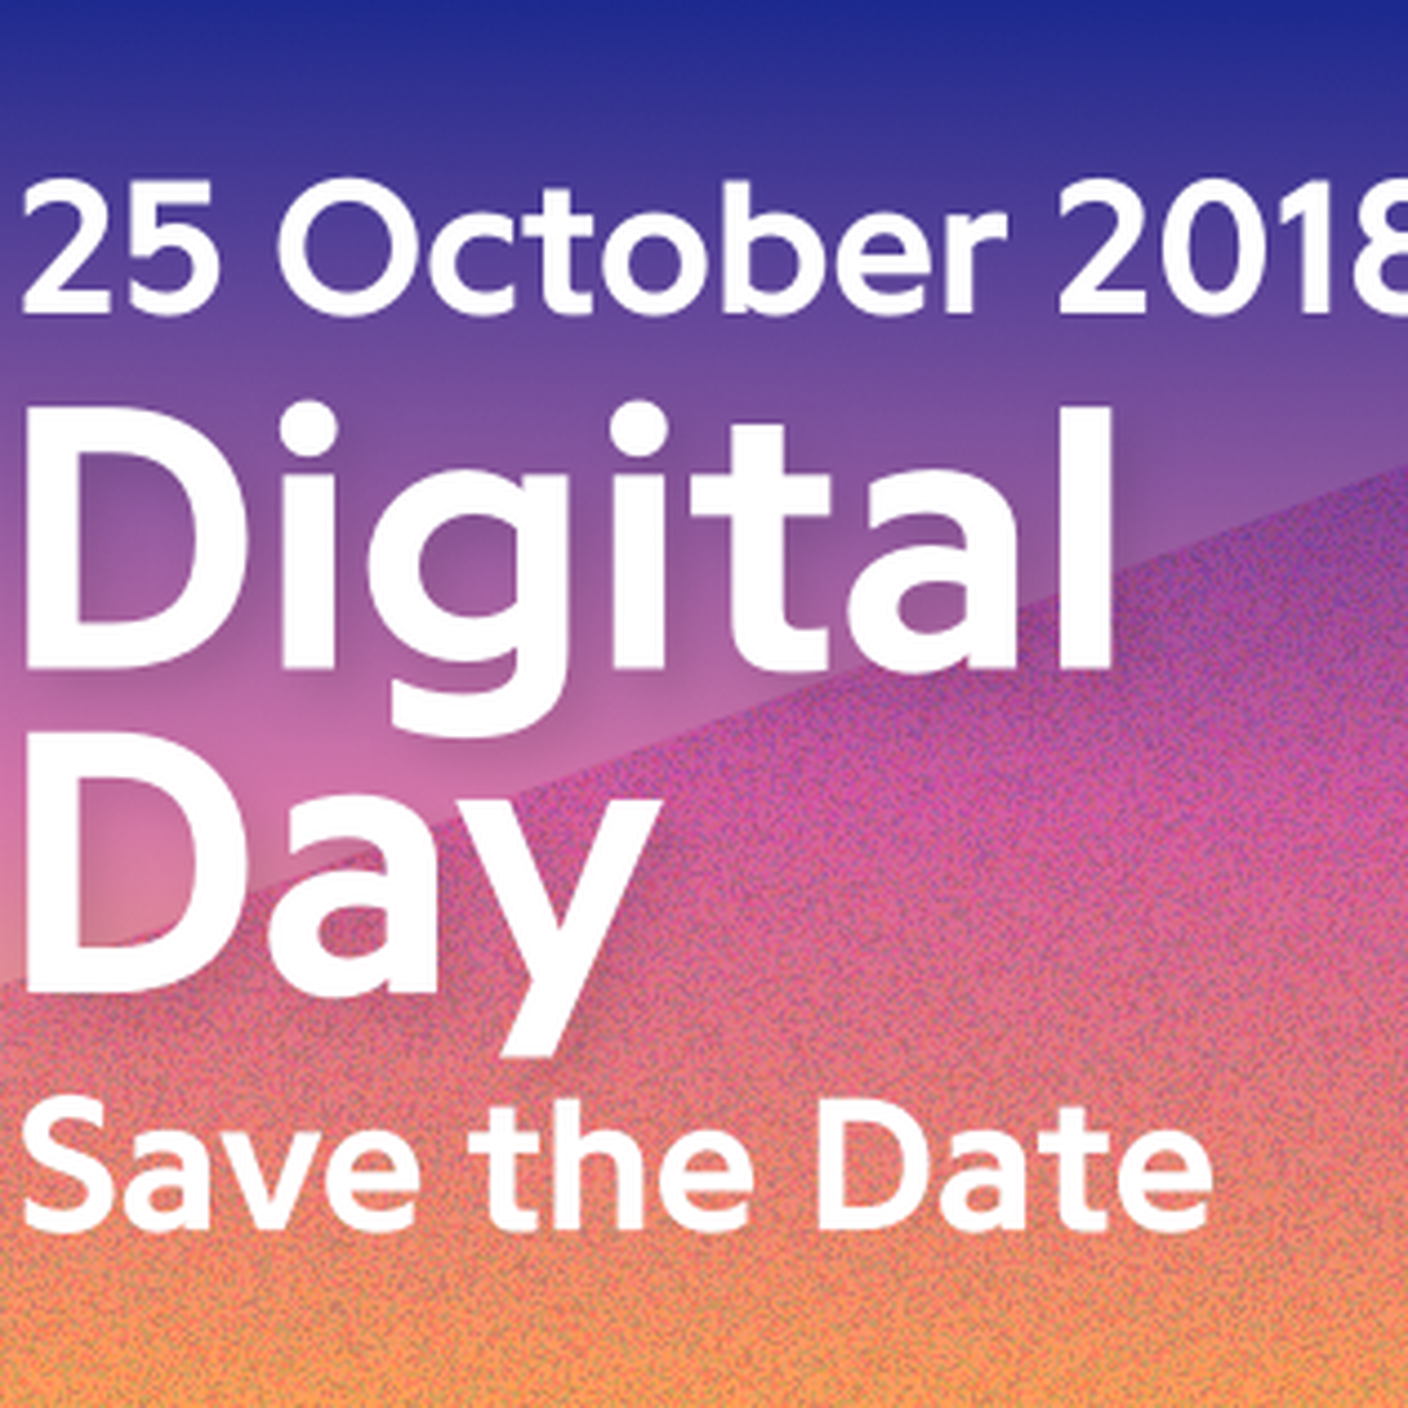 Digital Day 2018